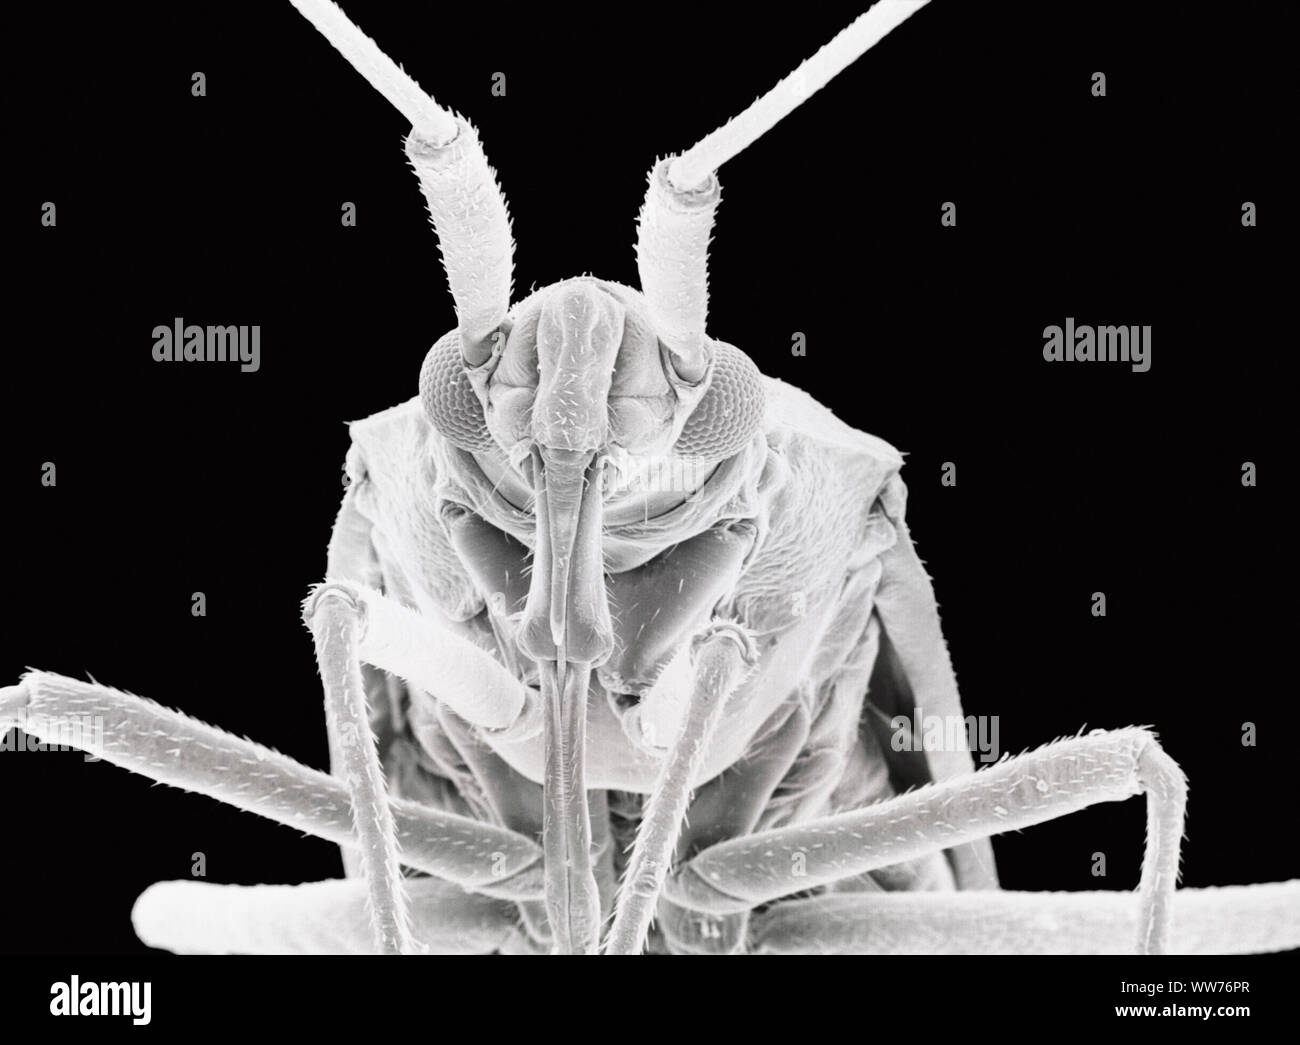 Rasterelektronenmikroskopische Aufnahme einer Anlage Bug (31-fache Vergrößerung) Stockfoto